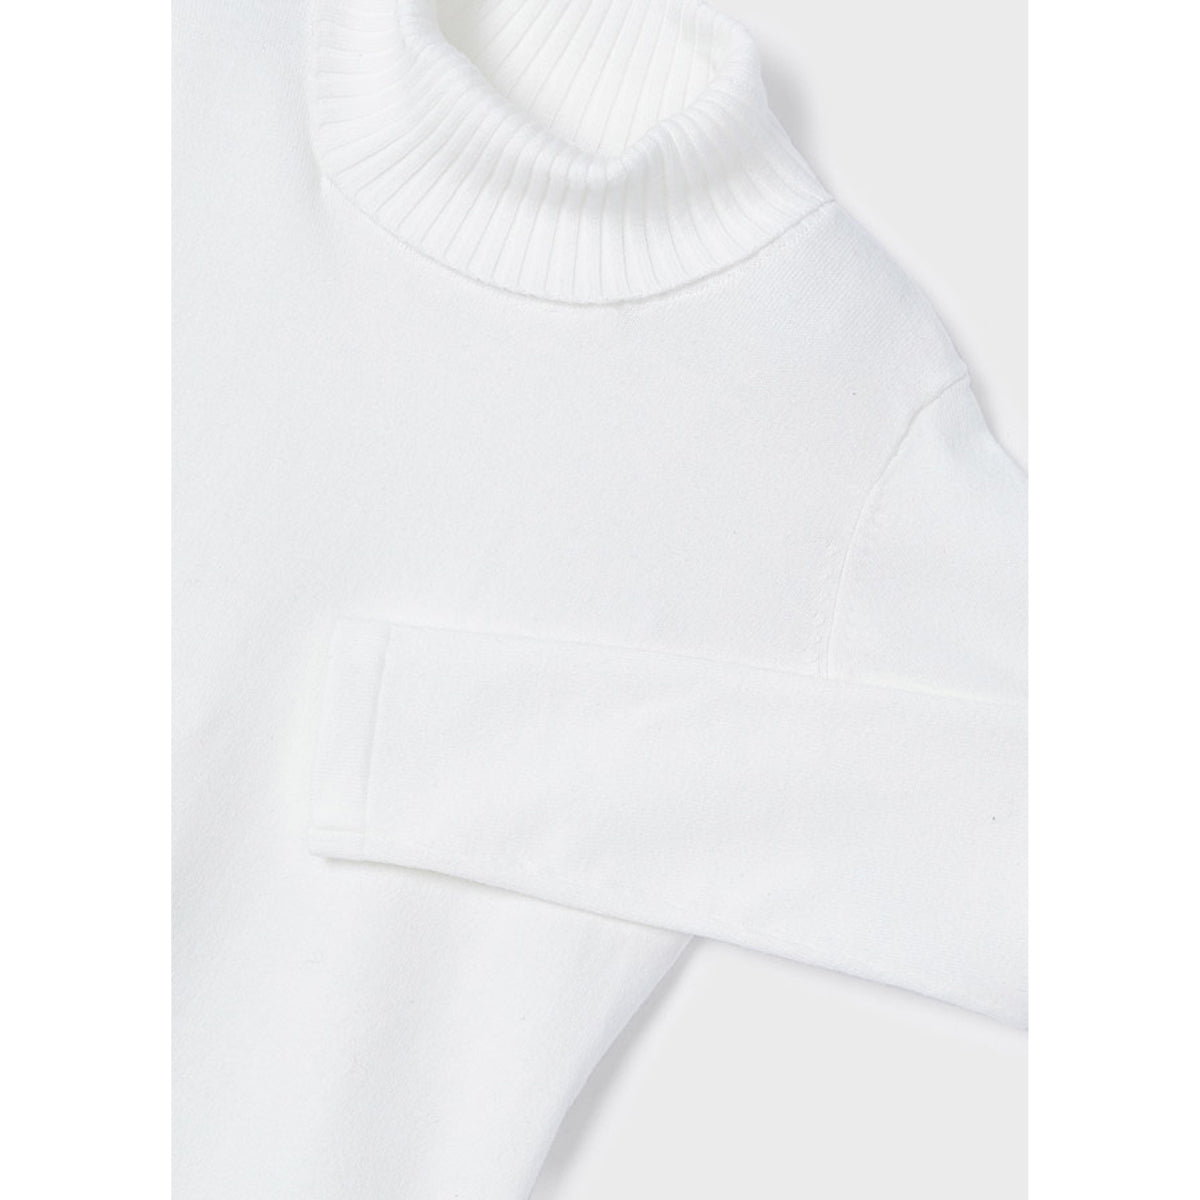 Ecofriends White Jersey Knit Round Collar Turtleneck Sweater